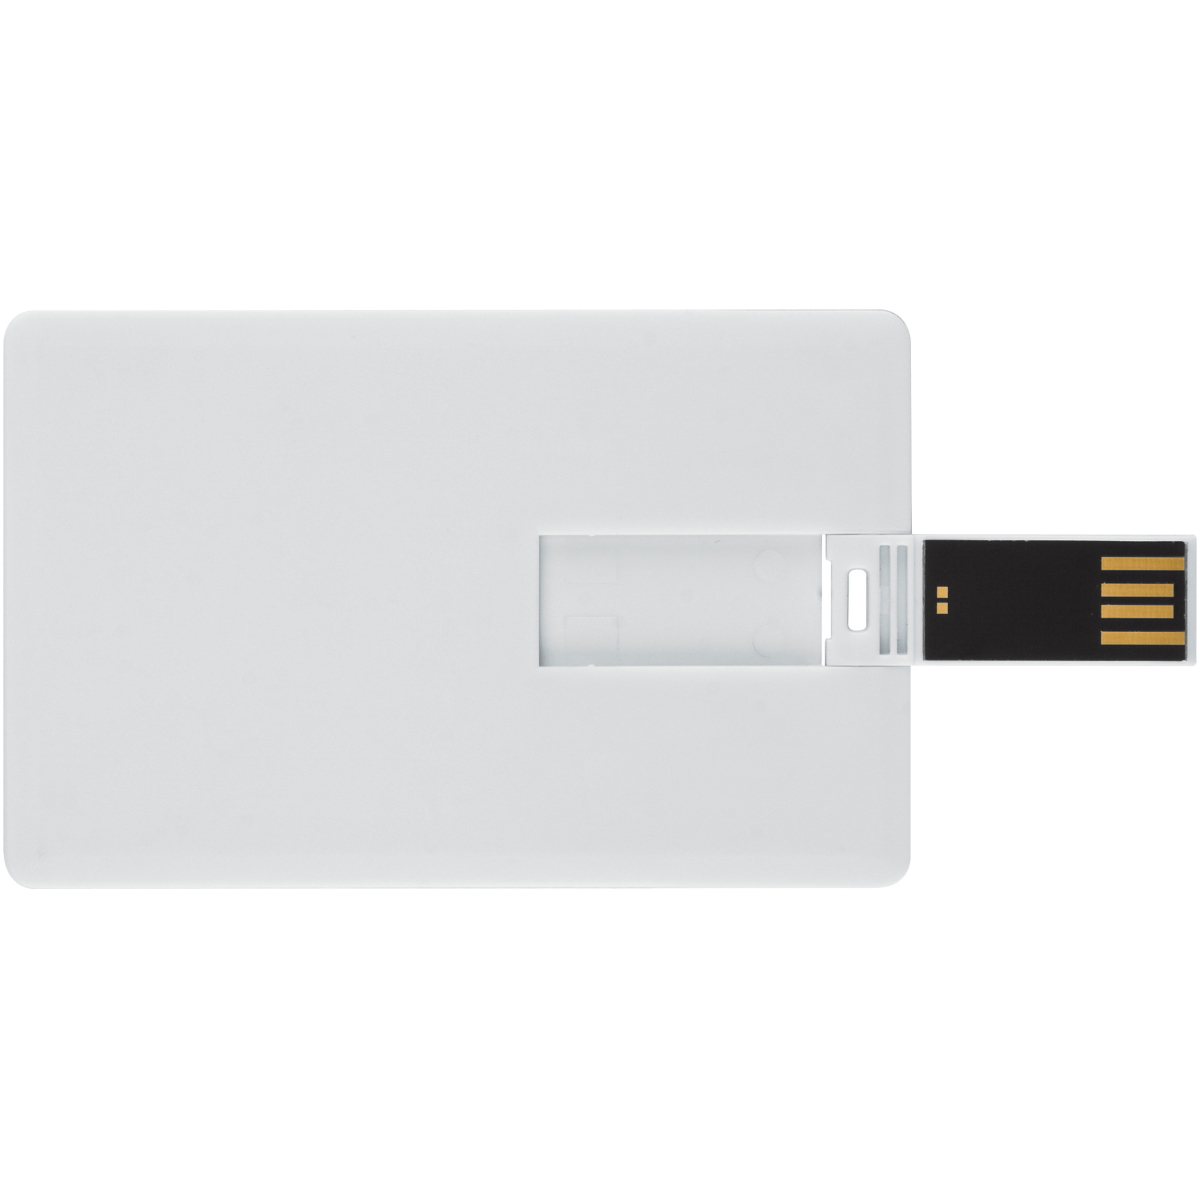 USB GERMANY ® 16 Kreditkarte GB) (Weiss, USB-Stick